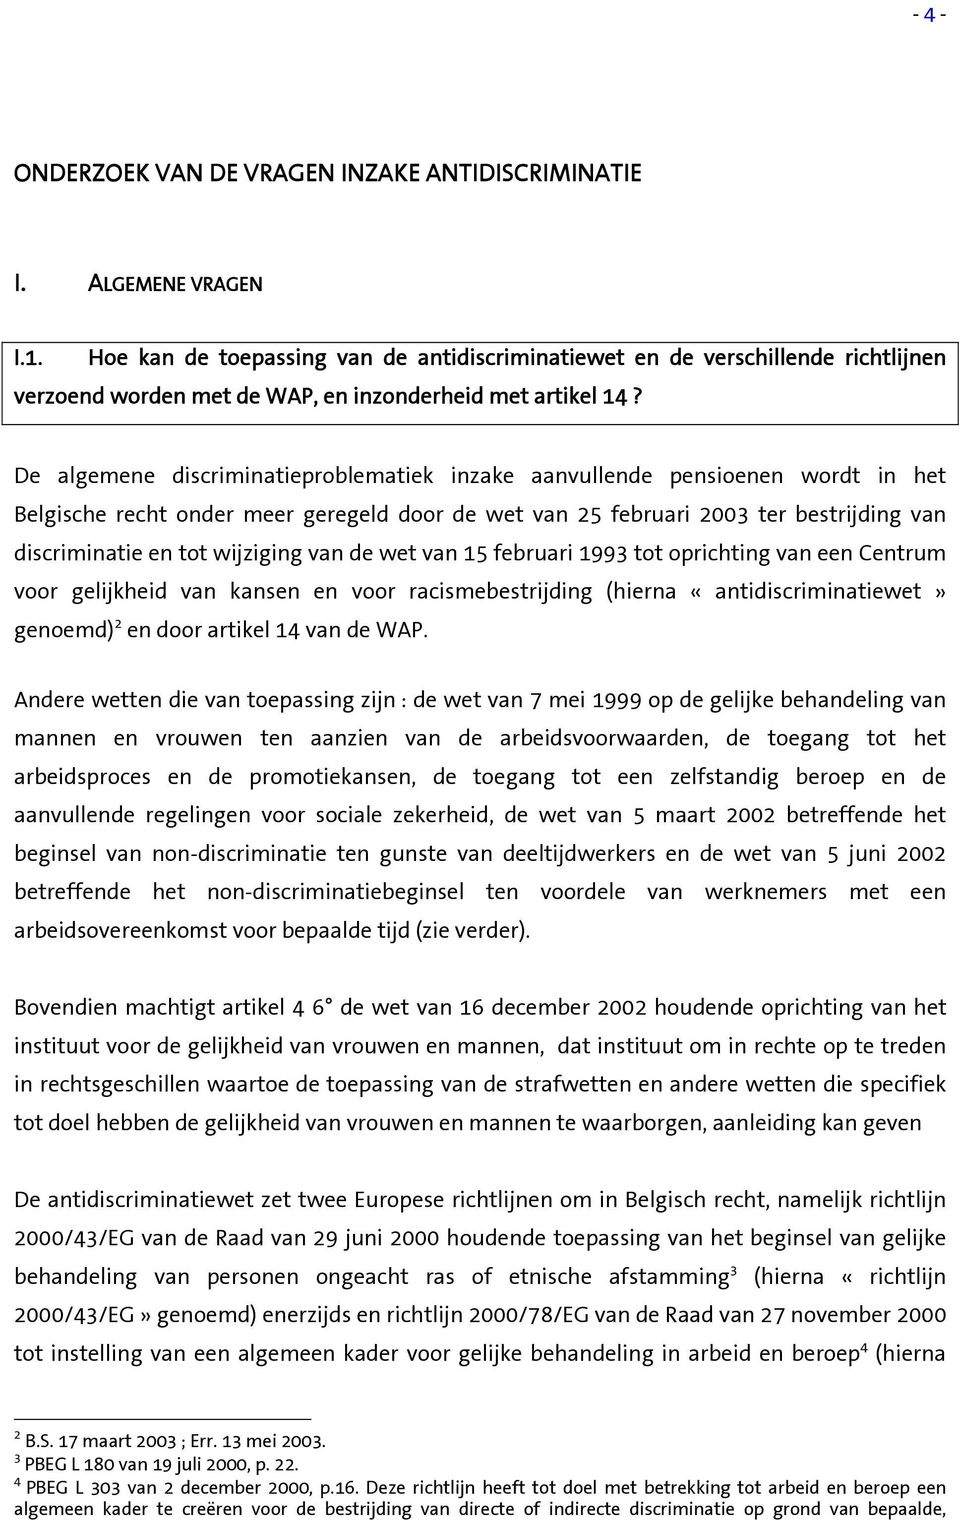 De algemene discriminatieproblematiek inzake aanvullende pensioenen wordt in het Belgische recht onder meer geregeld door de wet van 25 februari 2003 ter bestrijding van discriminatie en tot